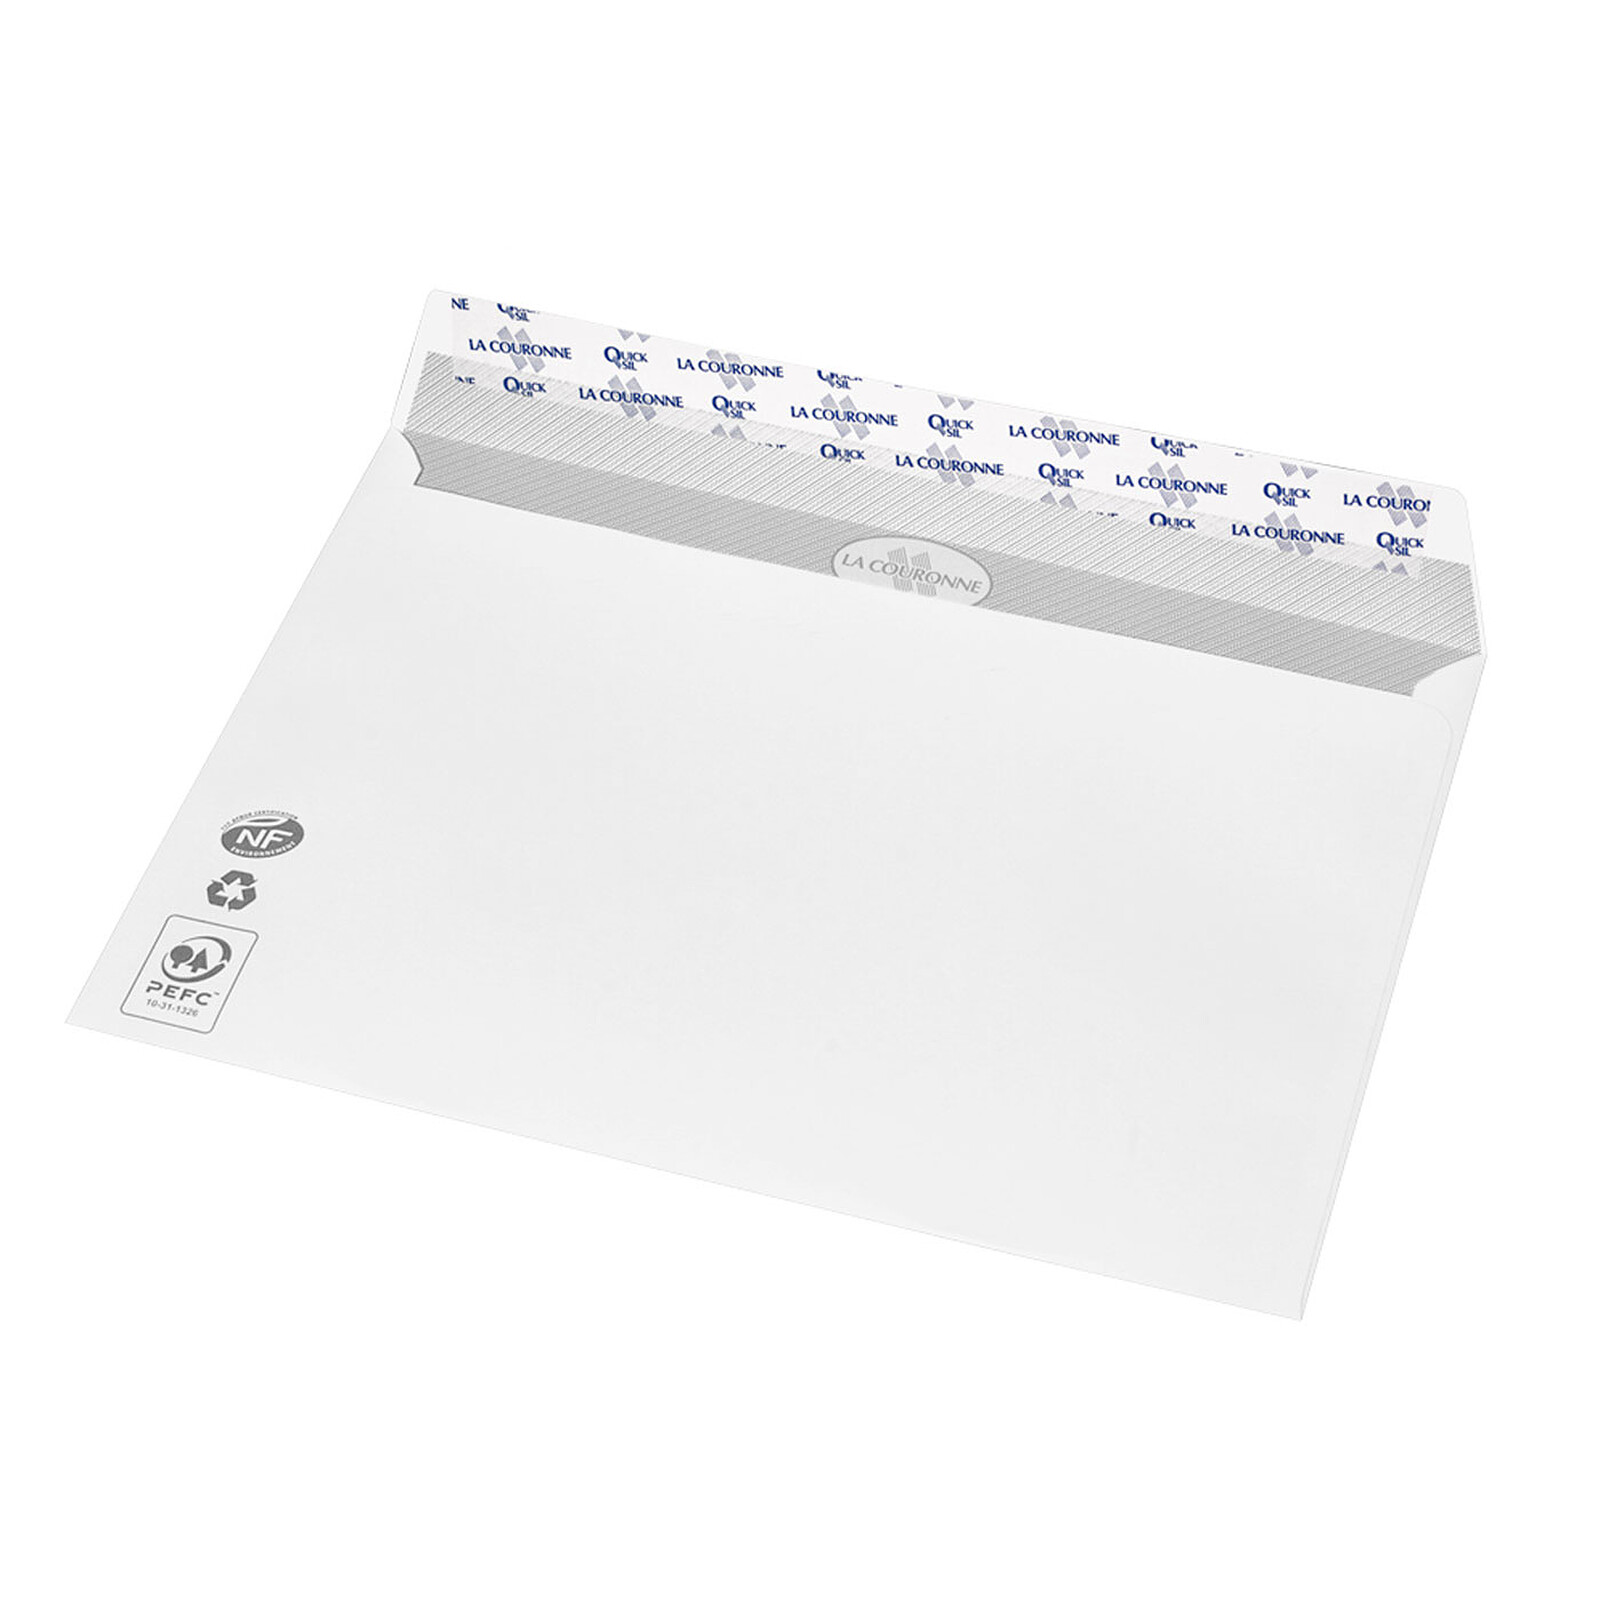 200 enveloppes blanches Premium C5 100 g La Couronne - JPG